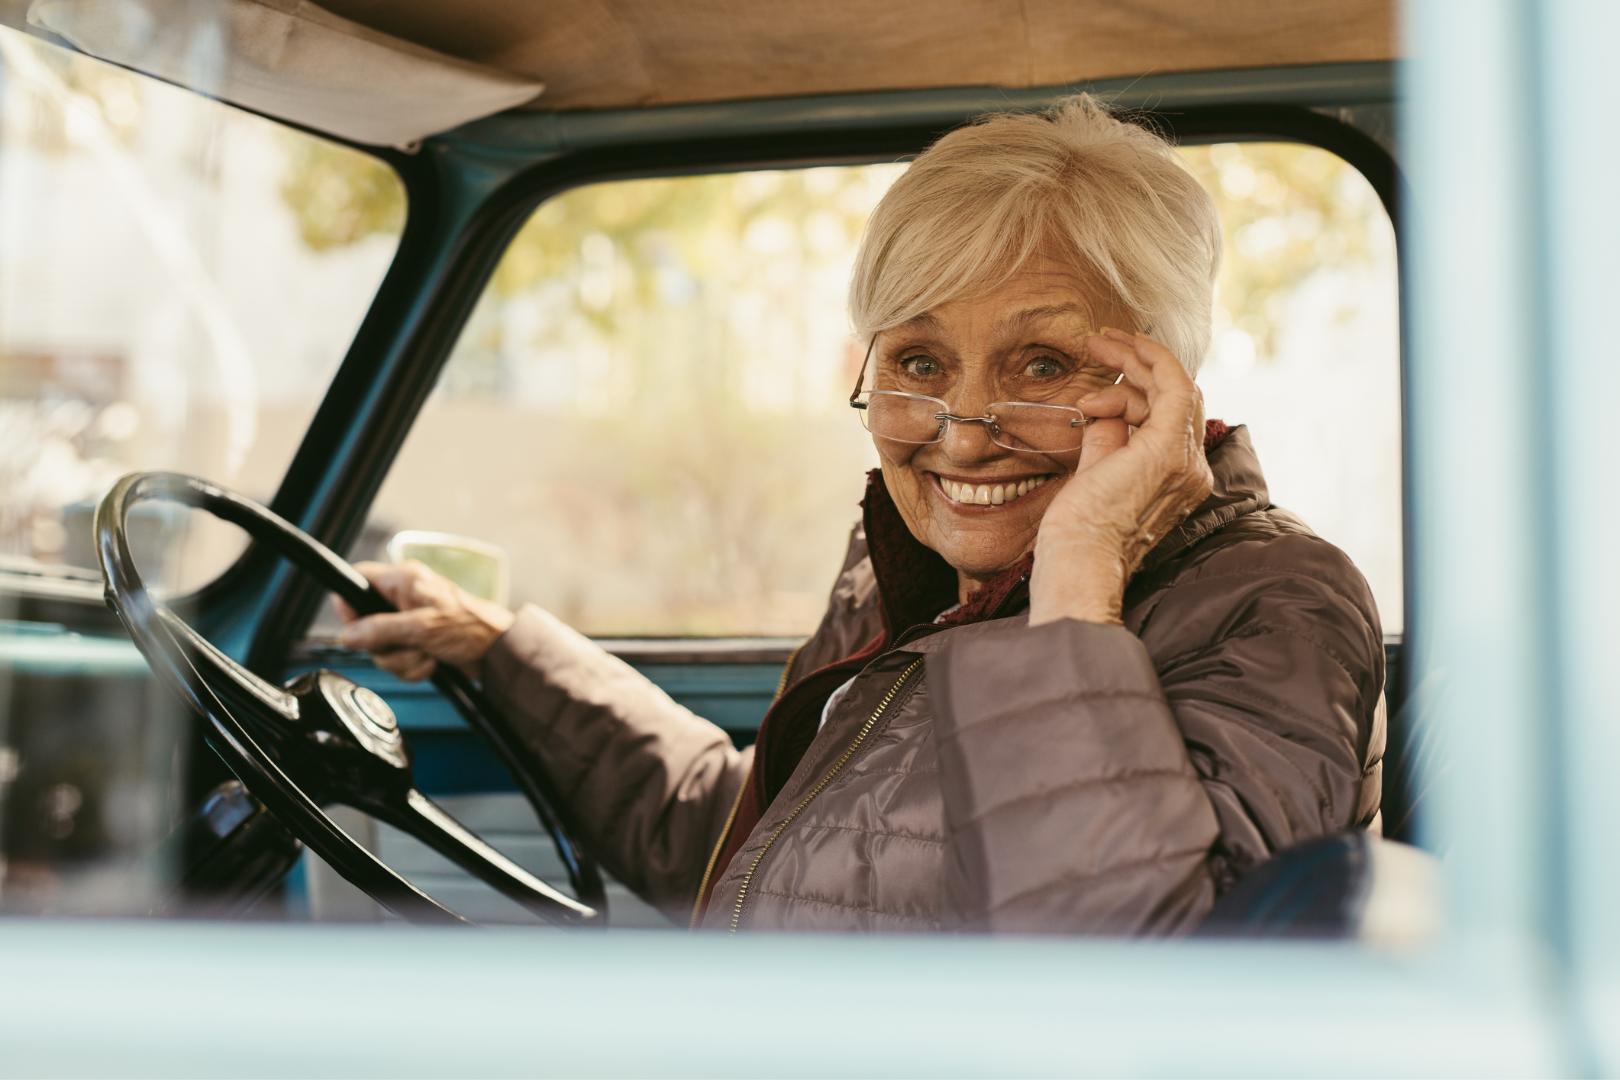 Patente di guida e test della vista: quando sono necessari gli occhiali?